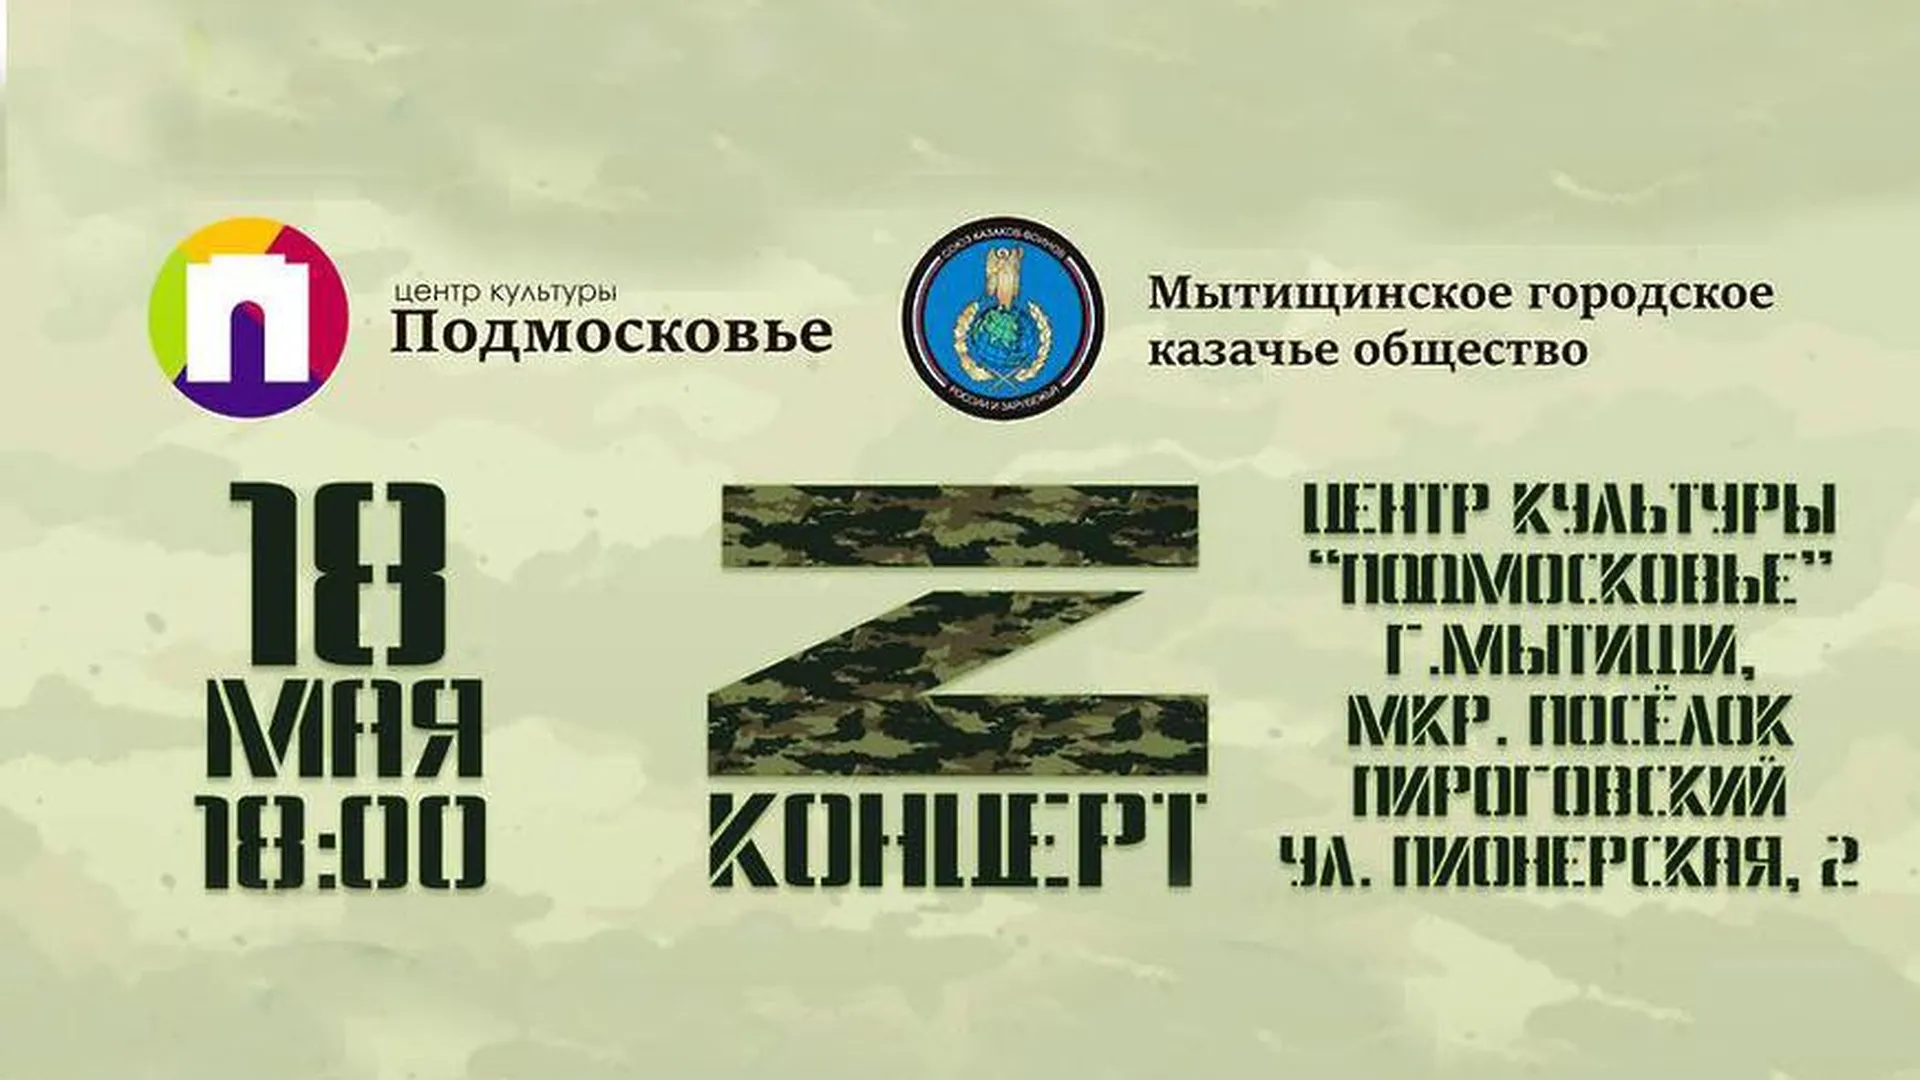 официальный сайт администрации г.о. Мытищи